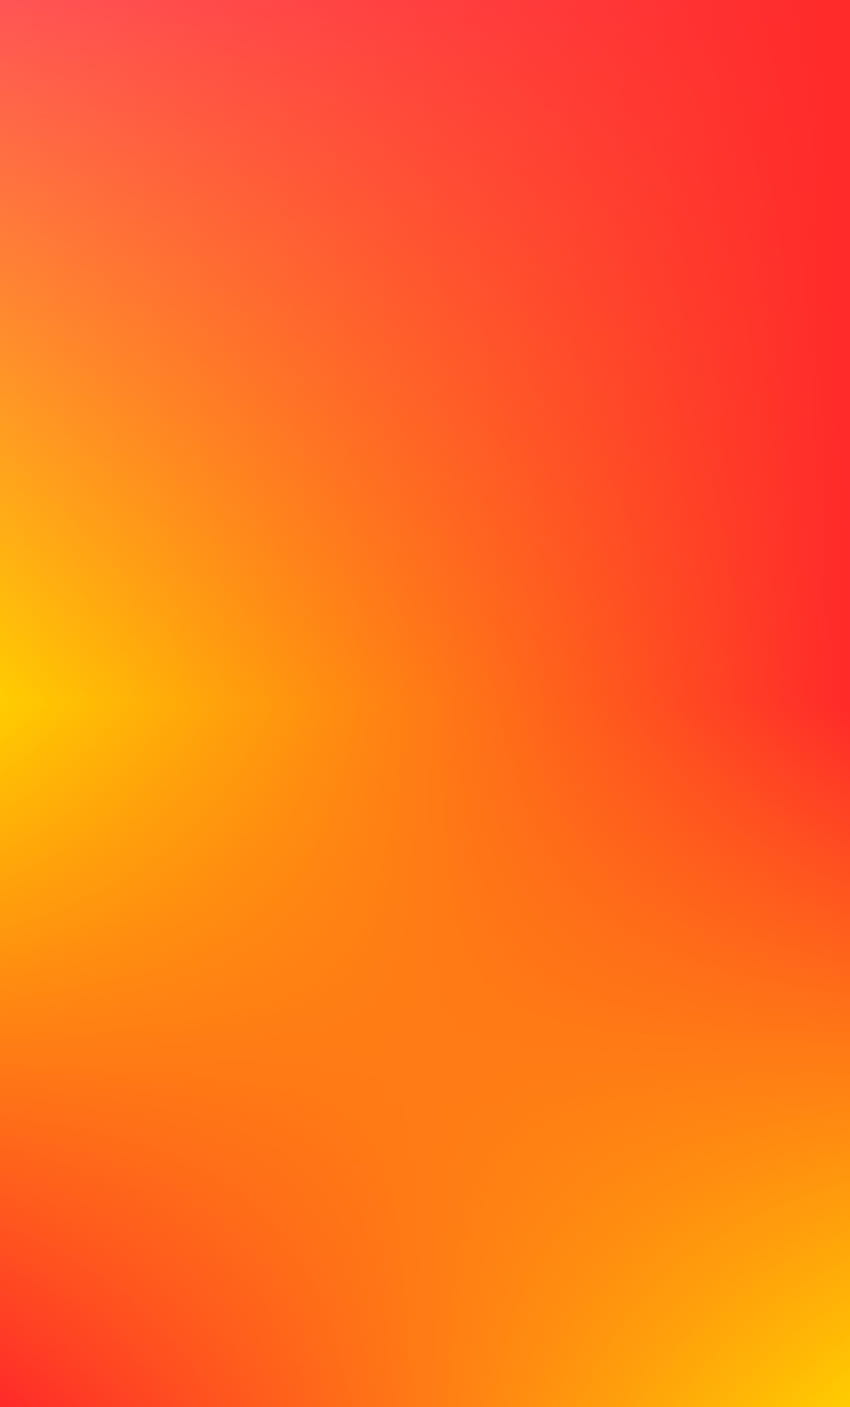 Bạn đam mê những màu sắc mạnh mẽ và đẹp mắt? Hãy tải ngay những bức ảnh Orange gradient HD wallpapers để tiếp tục cảm nhận sự trẻ trung và năng động của mình. Đây sẽ là một sự bổ sung tuyệt vời cho bộ sưu tập hình nền của bạn.